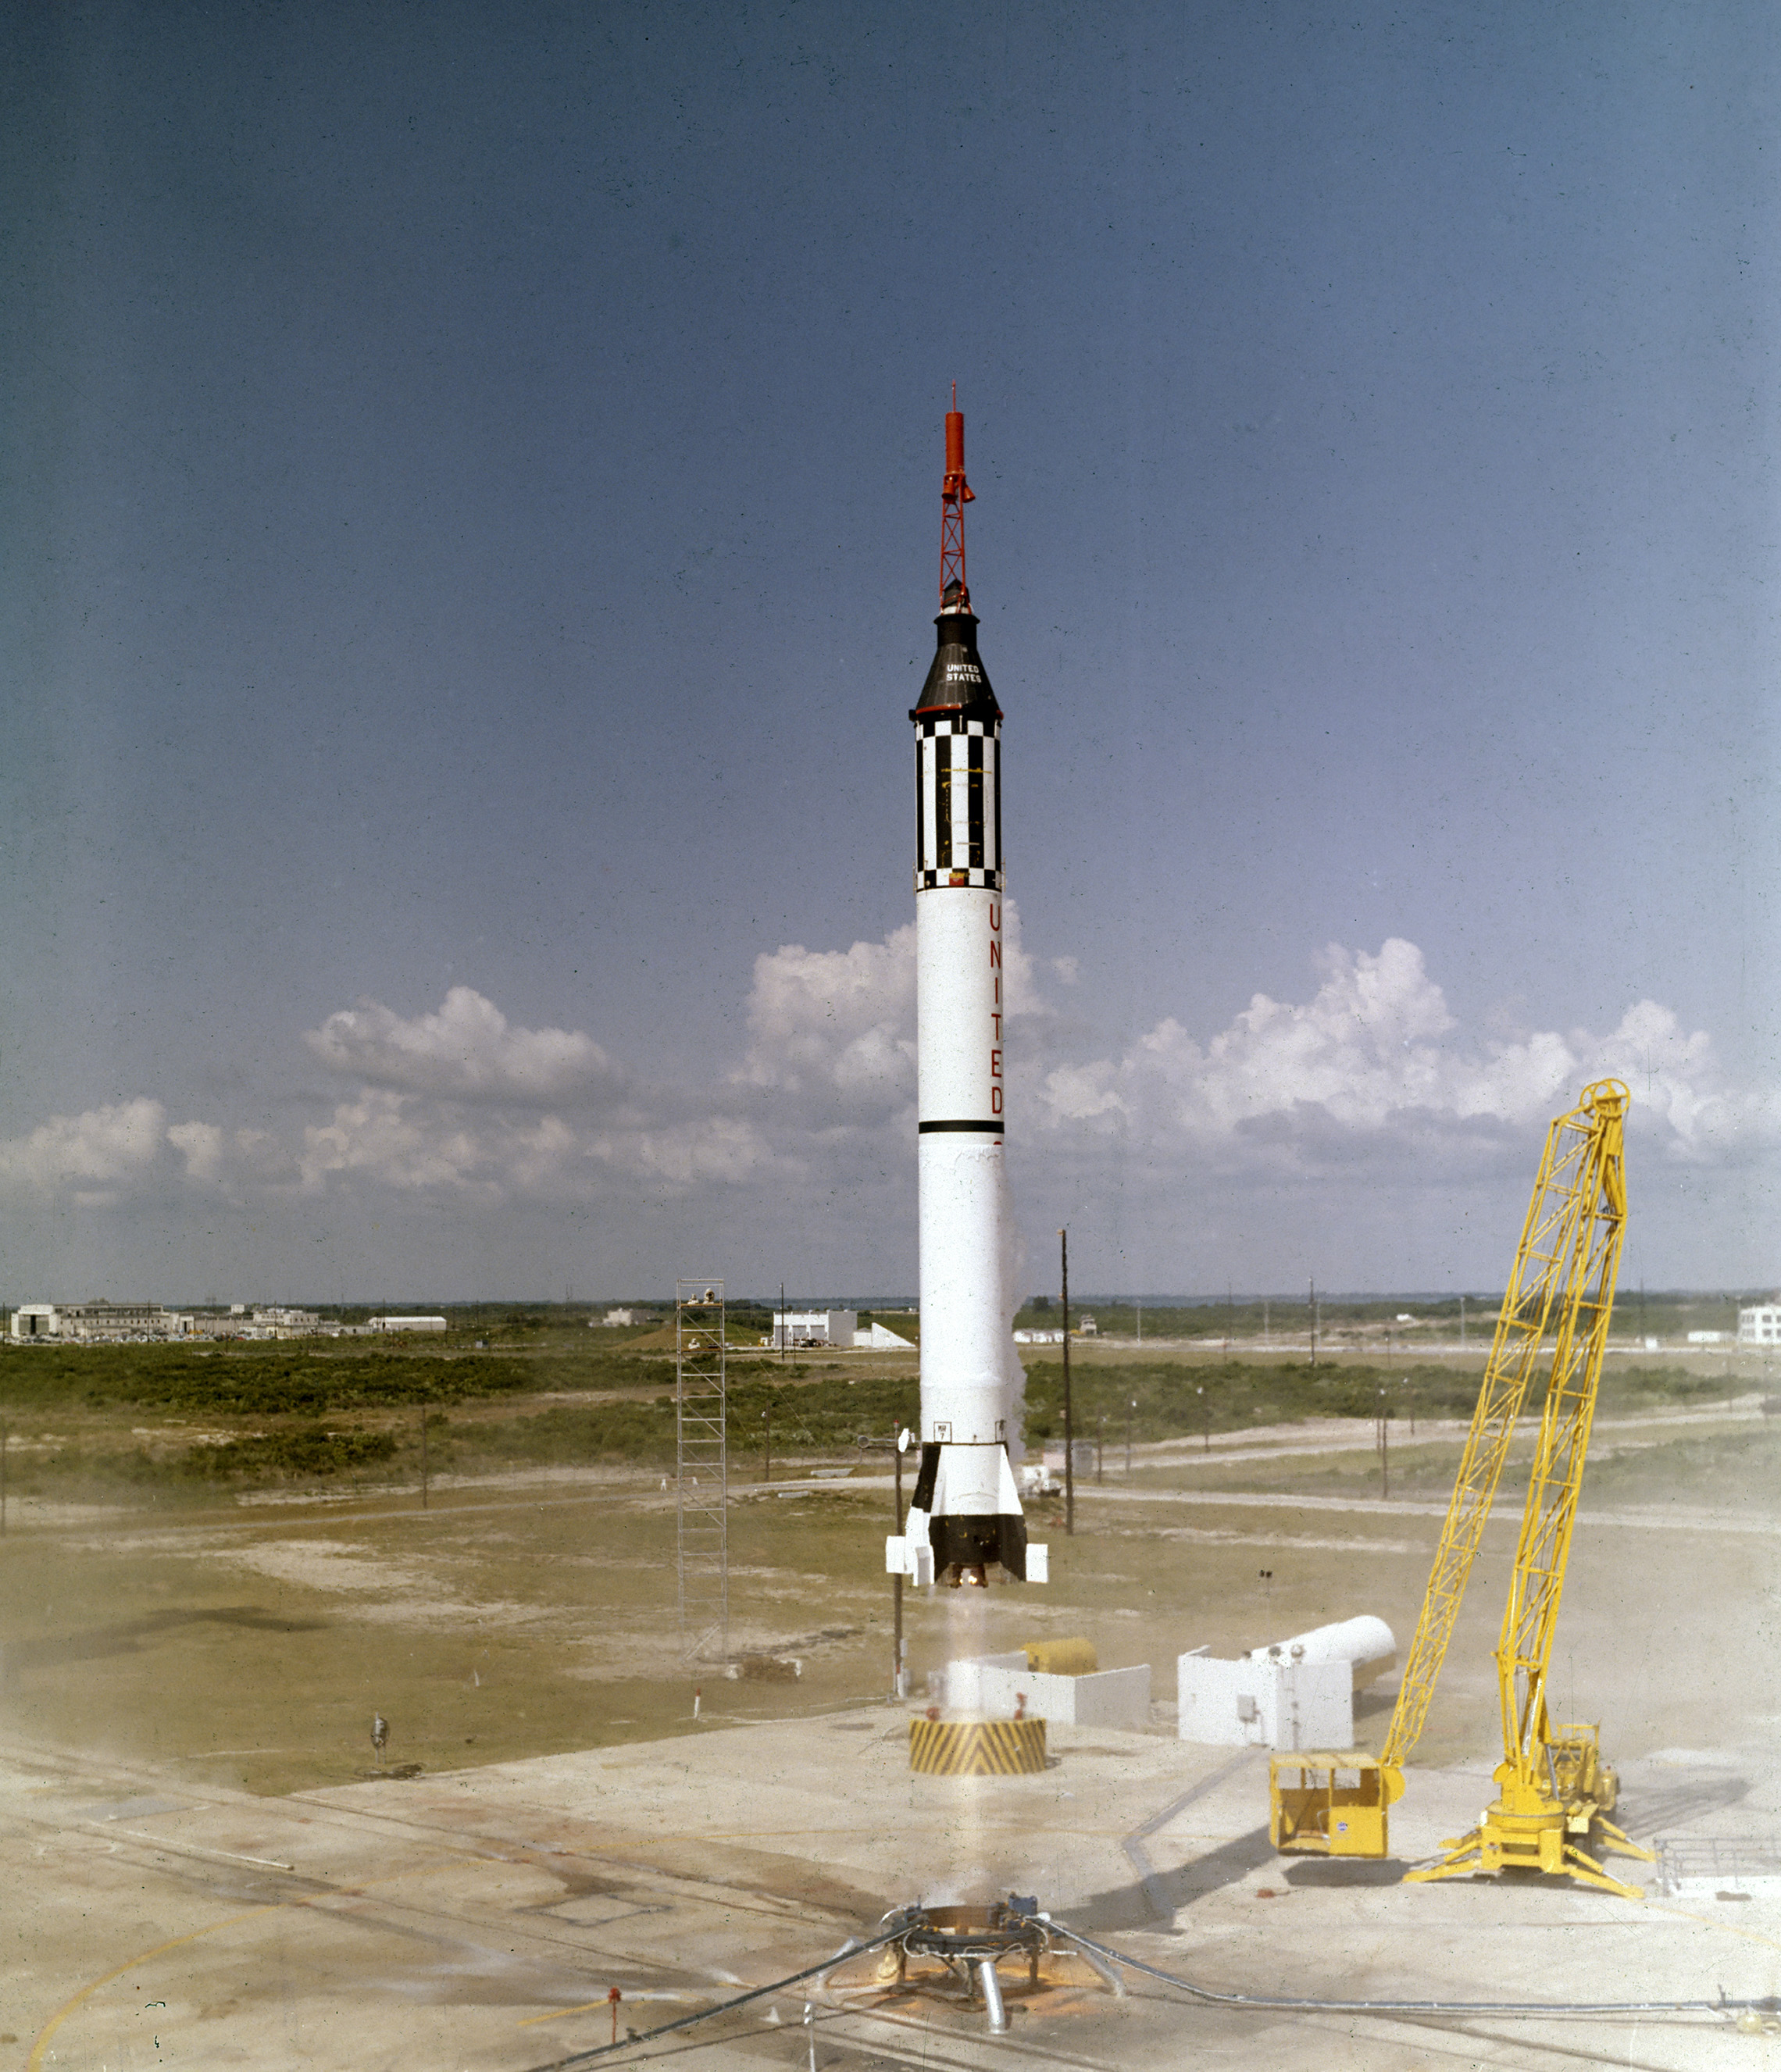 L'astronaute Alan B. Shepard, Jr. décolle dans le vaisseau spatial Freedom 7 Mercury le 5 mai 1961. Ce troisième vol du véhicule Mercury-Redstone (MR-3), développé par le Dr Wernher von Braun et l'équipe de fusées à Huntsille, en Alabama, était la première mission spatiale habitée pour les États-Unis. Au cours du vol suborbital de 15 minutes, Shepard a atteint une altitude de 115 miles et a parcouru 302 miles en aval. (NASA)